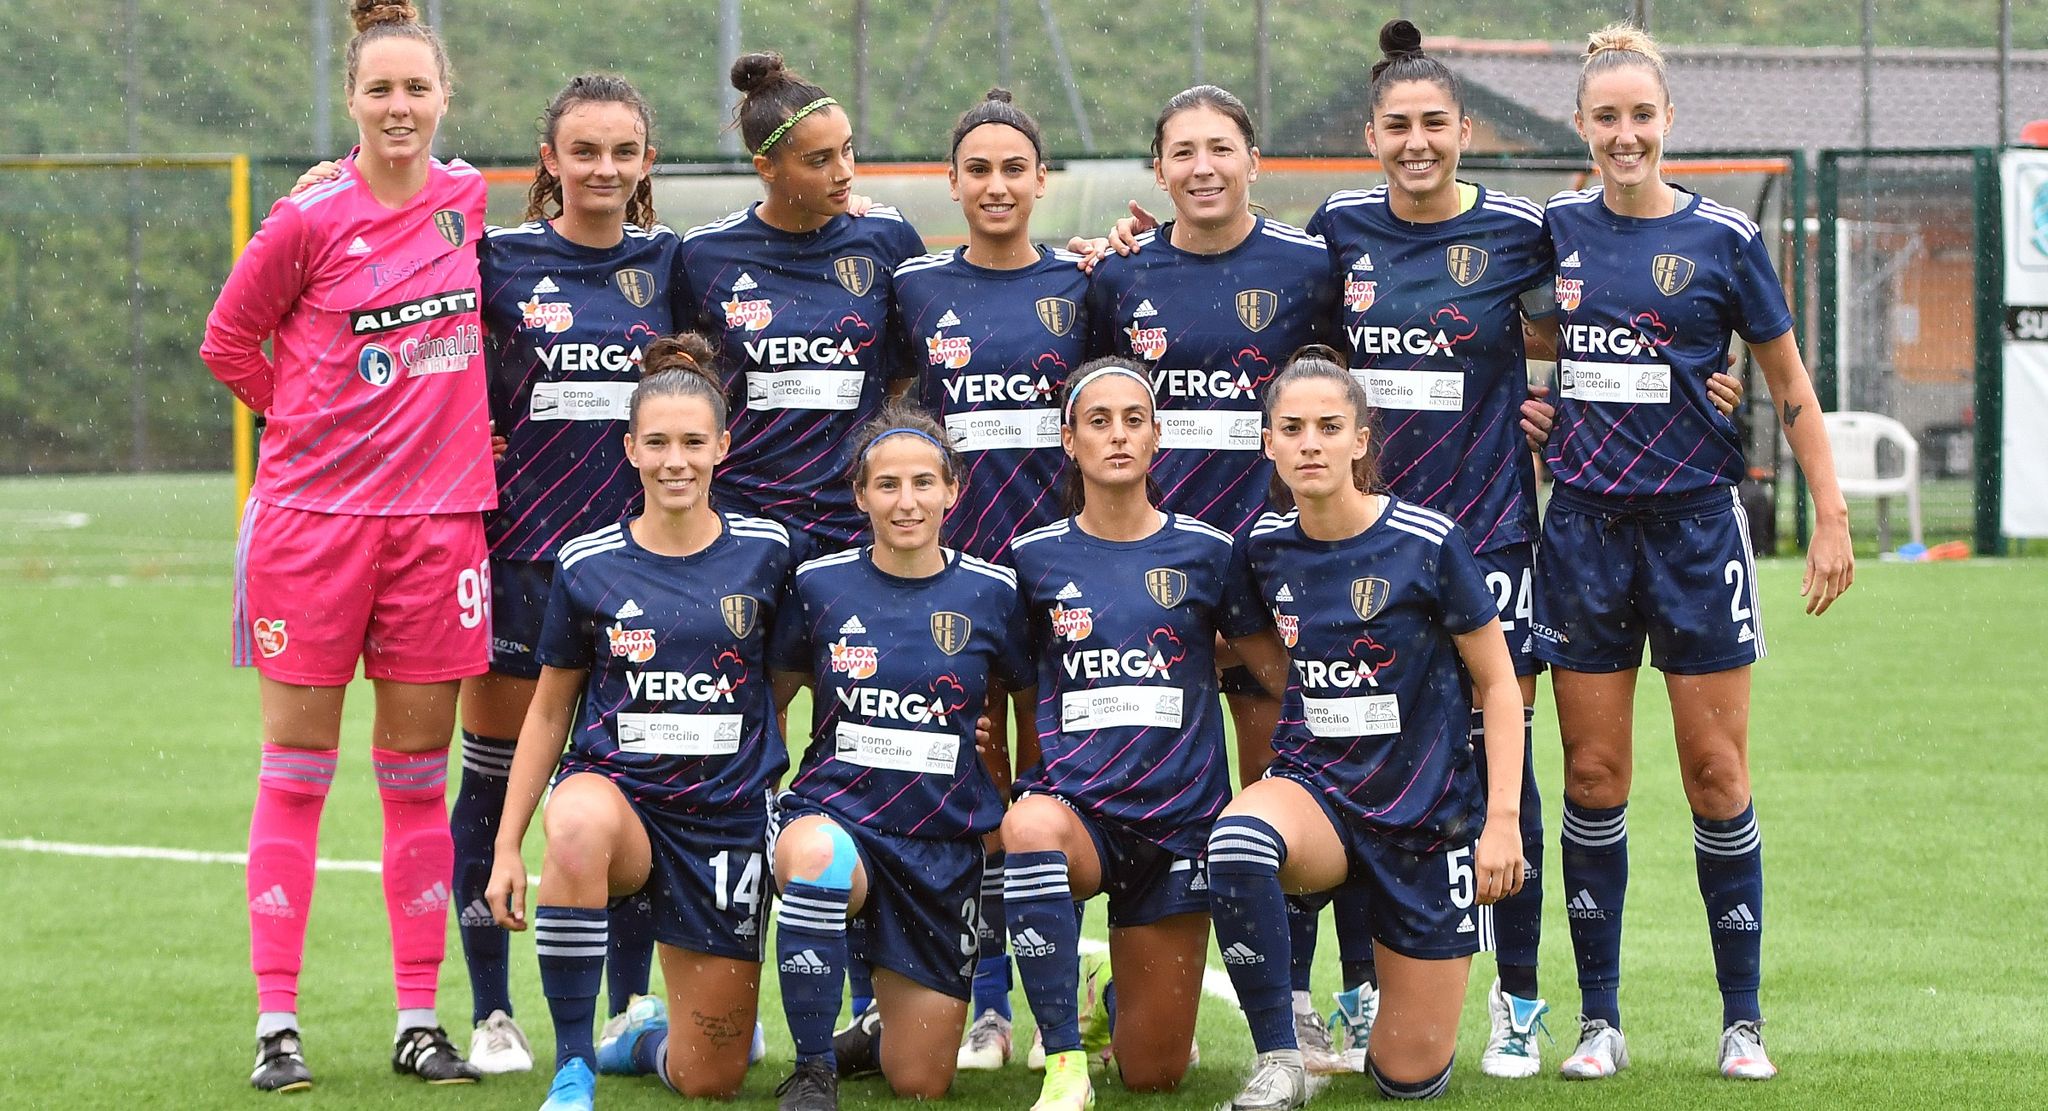 6617 giorni dopo la Champions a Cornaredo: viva il calcio femminile